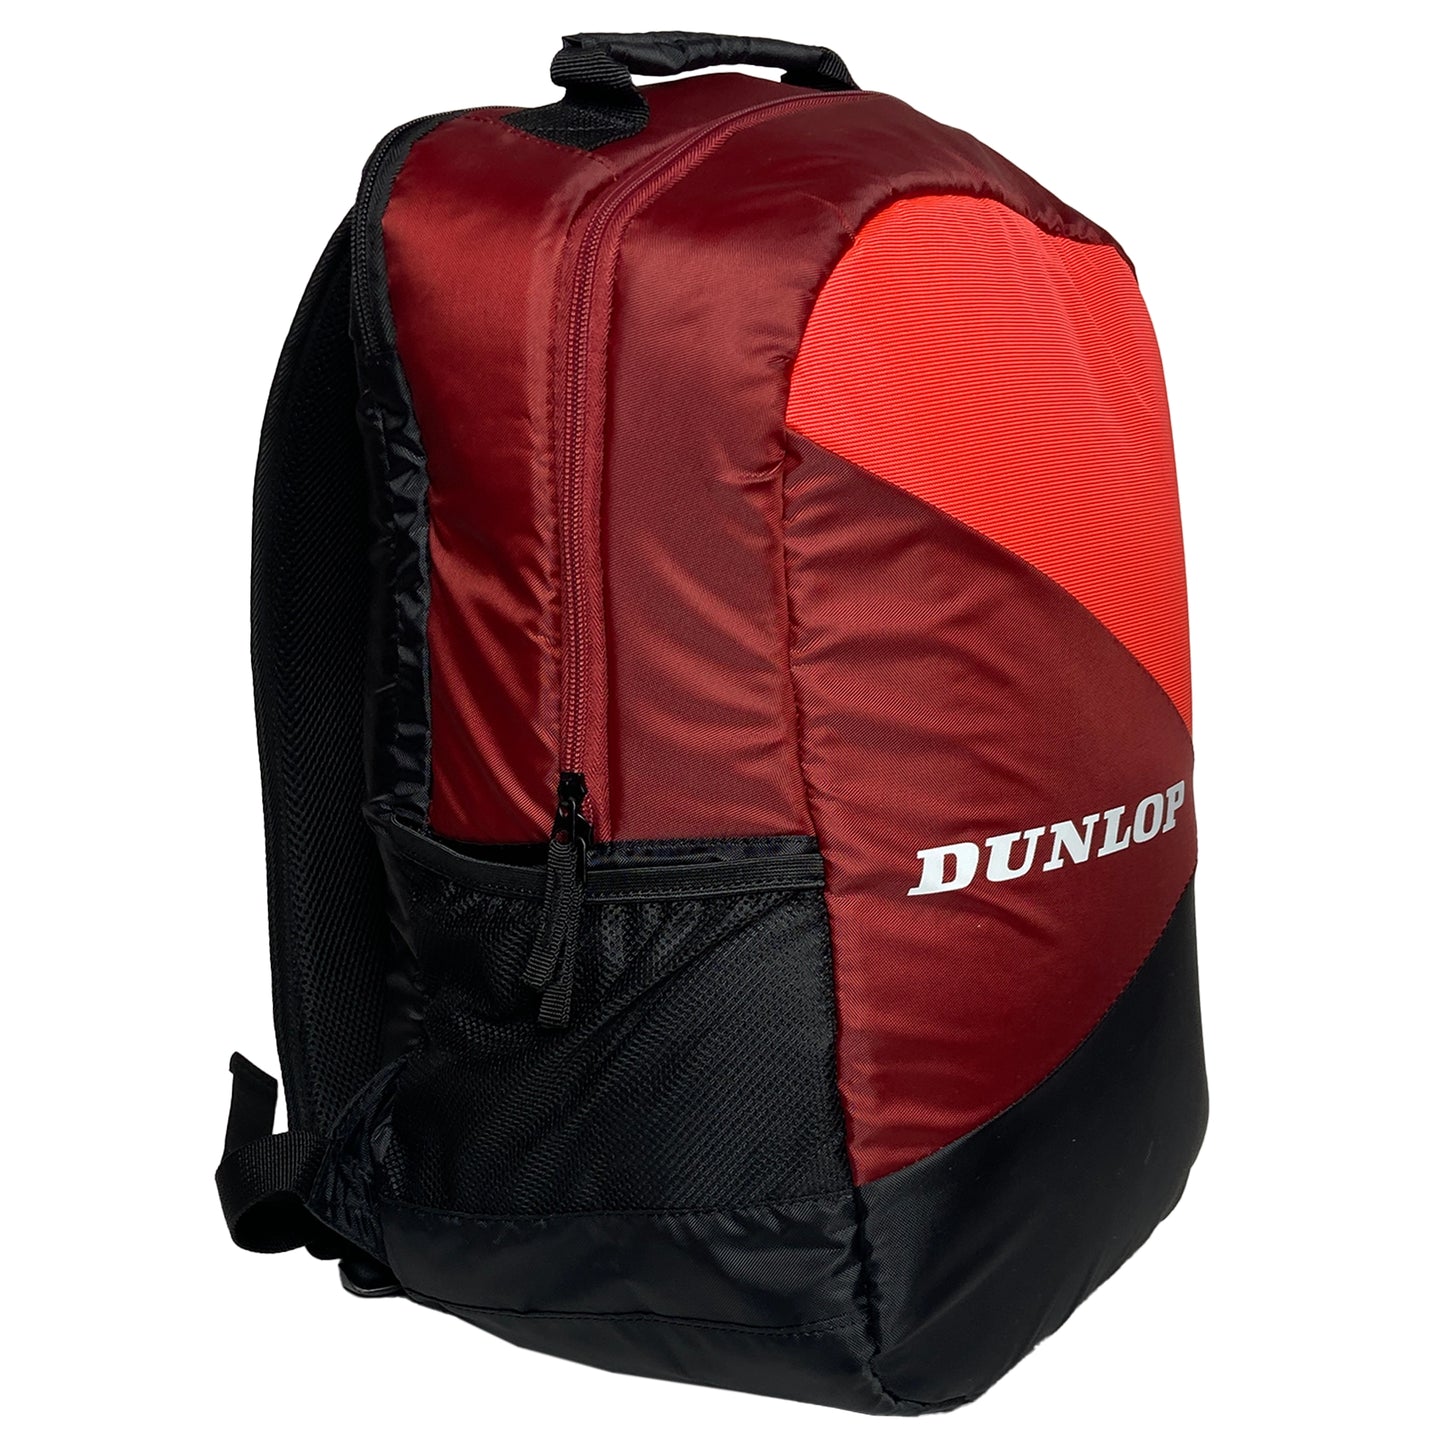 Dunlop sac à dos CX Club Noir/Rouge